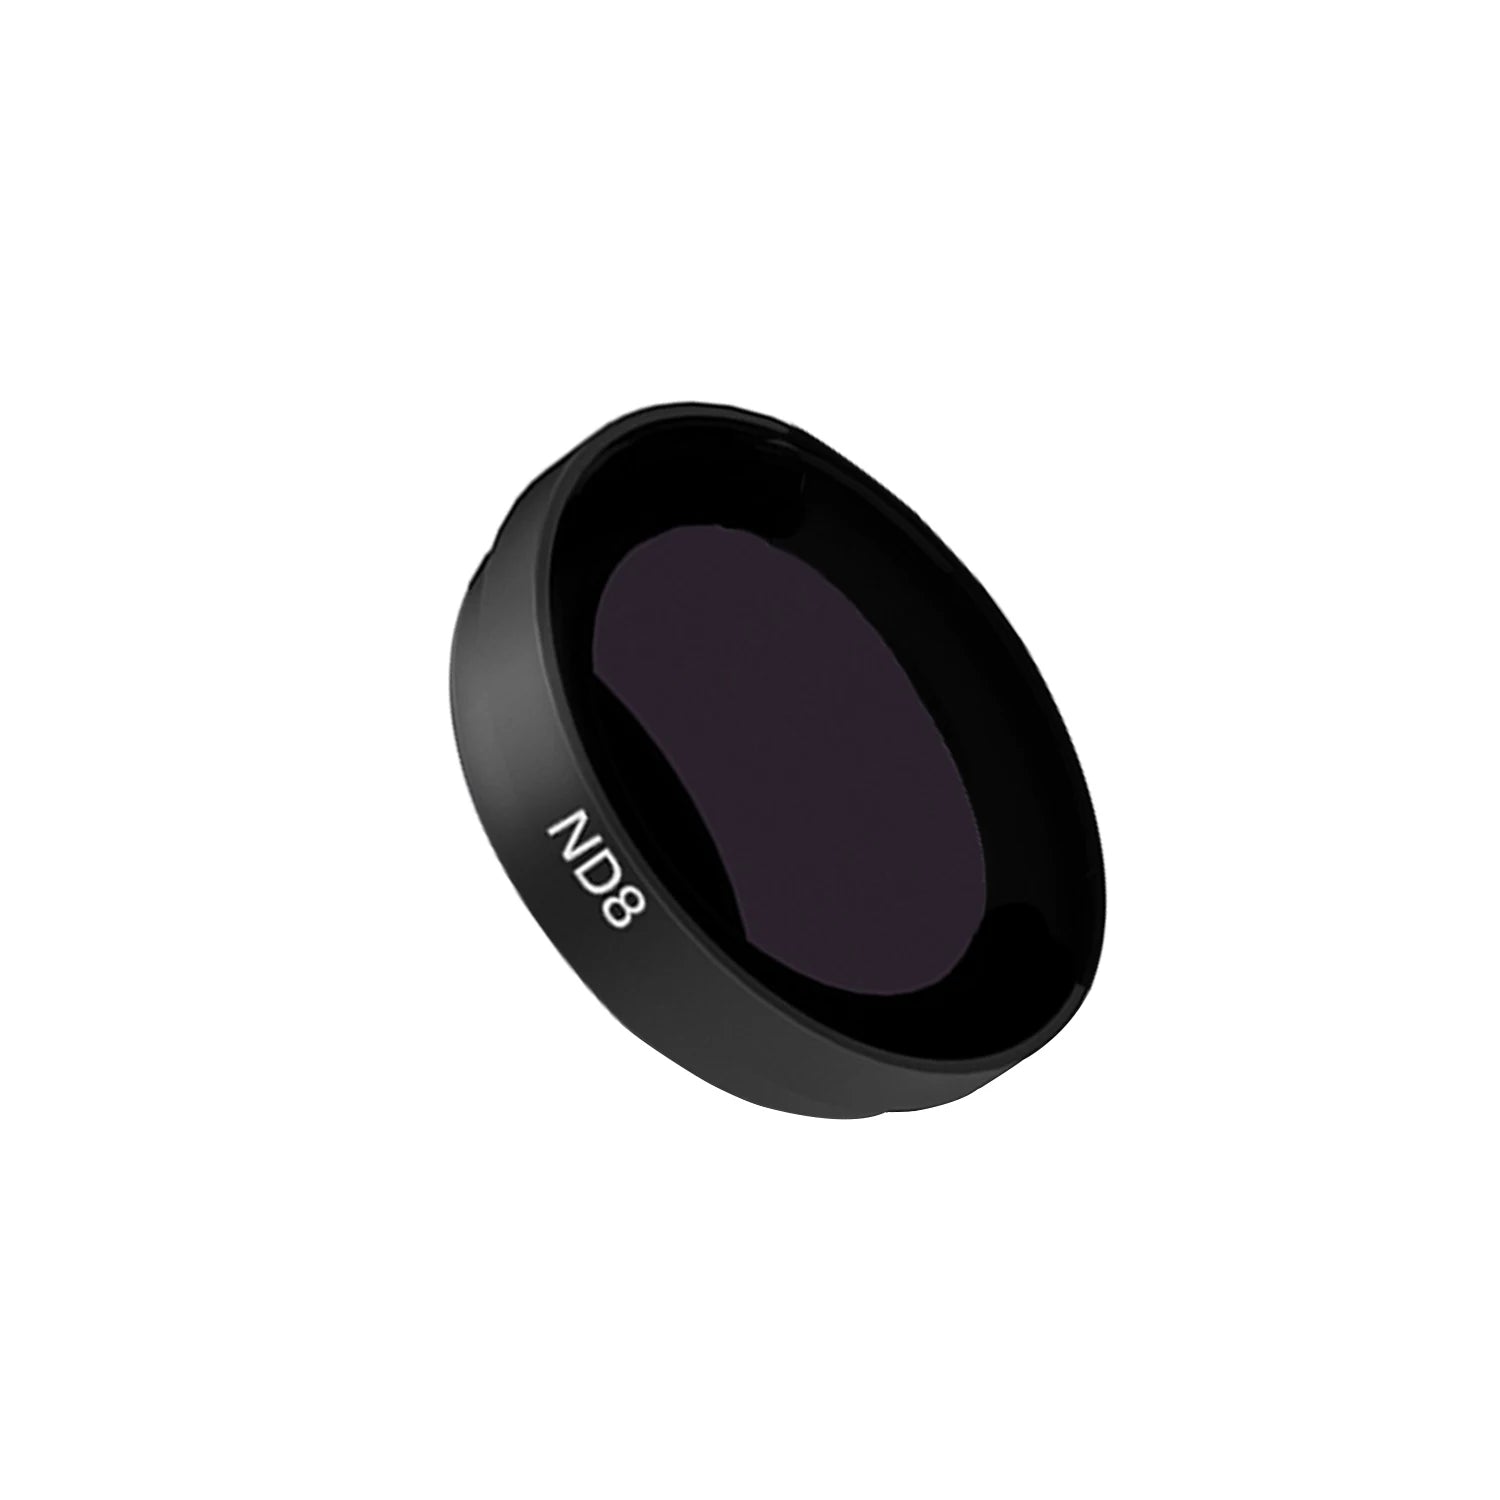 ND8 / ND16 / ND32 UV Lens Filter, Jumpeak ND8 / ND16/ND32 UV Lens Filter for